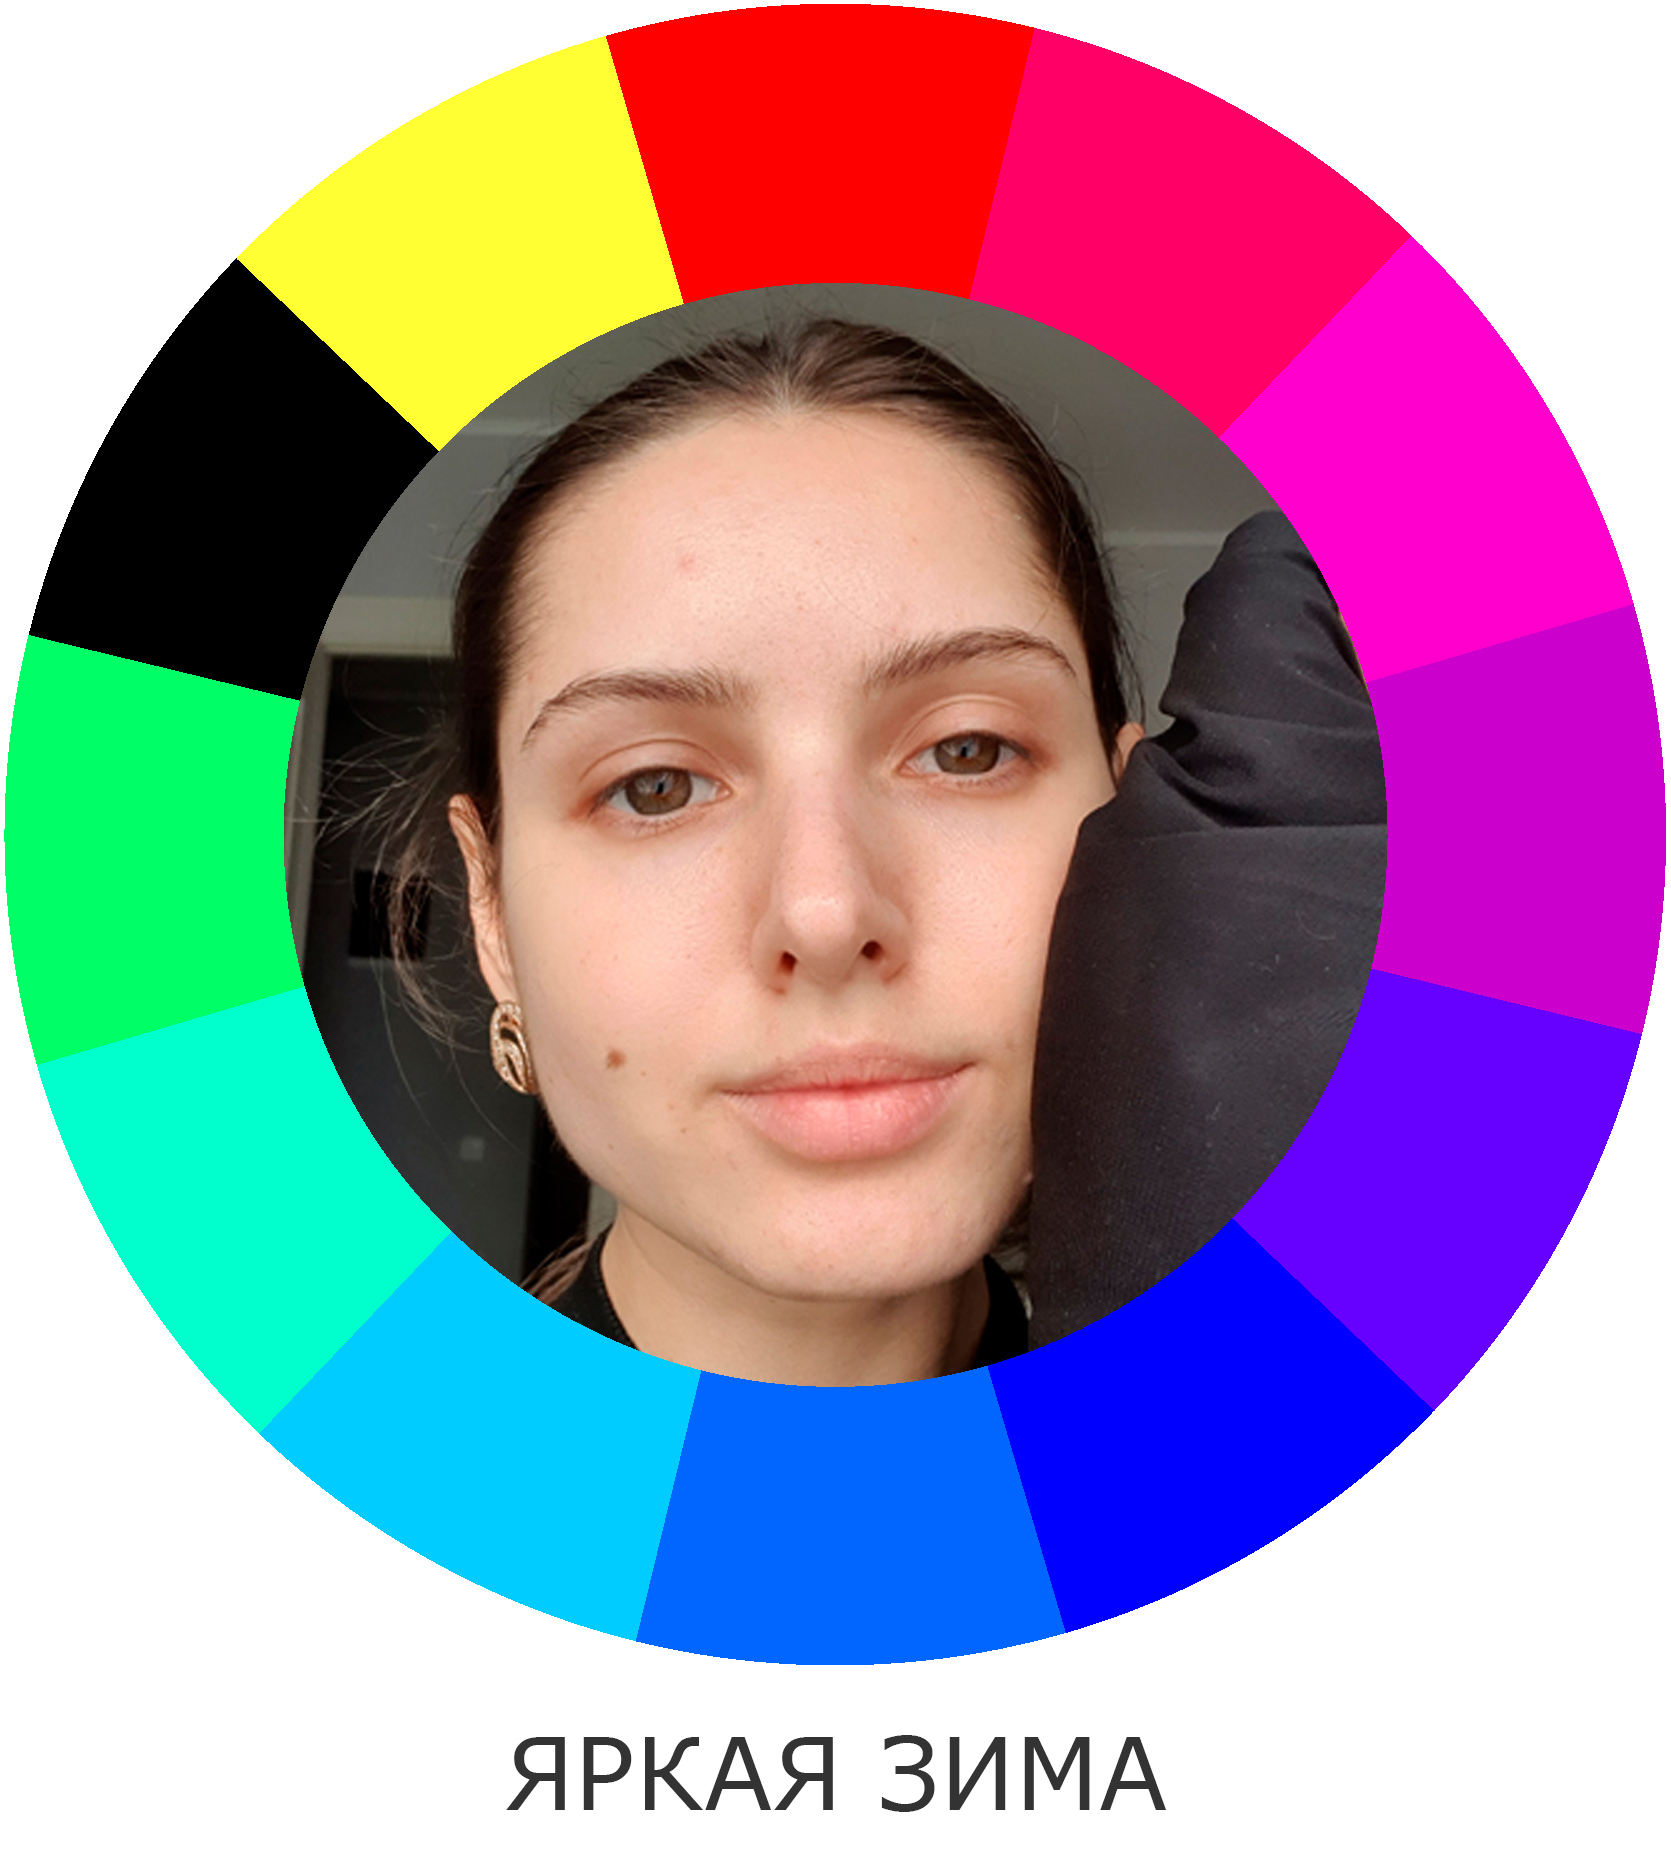 Фото: Татьяна К., 25 лет, определение цветотипа и степени контрастности внешности